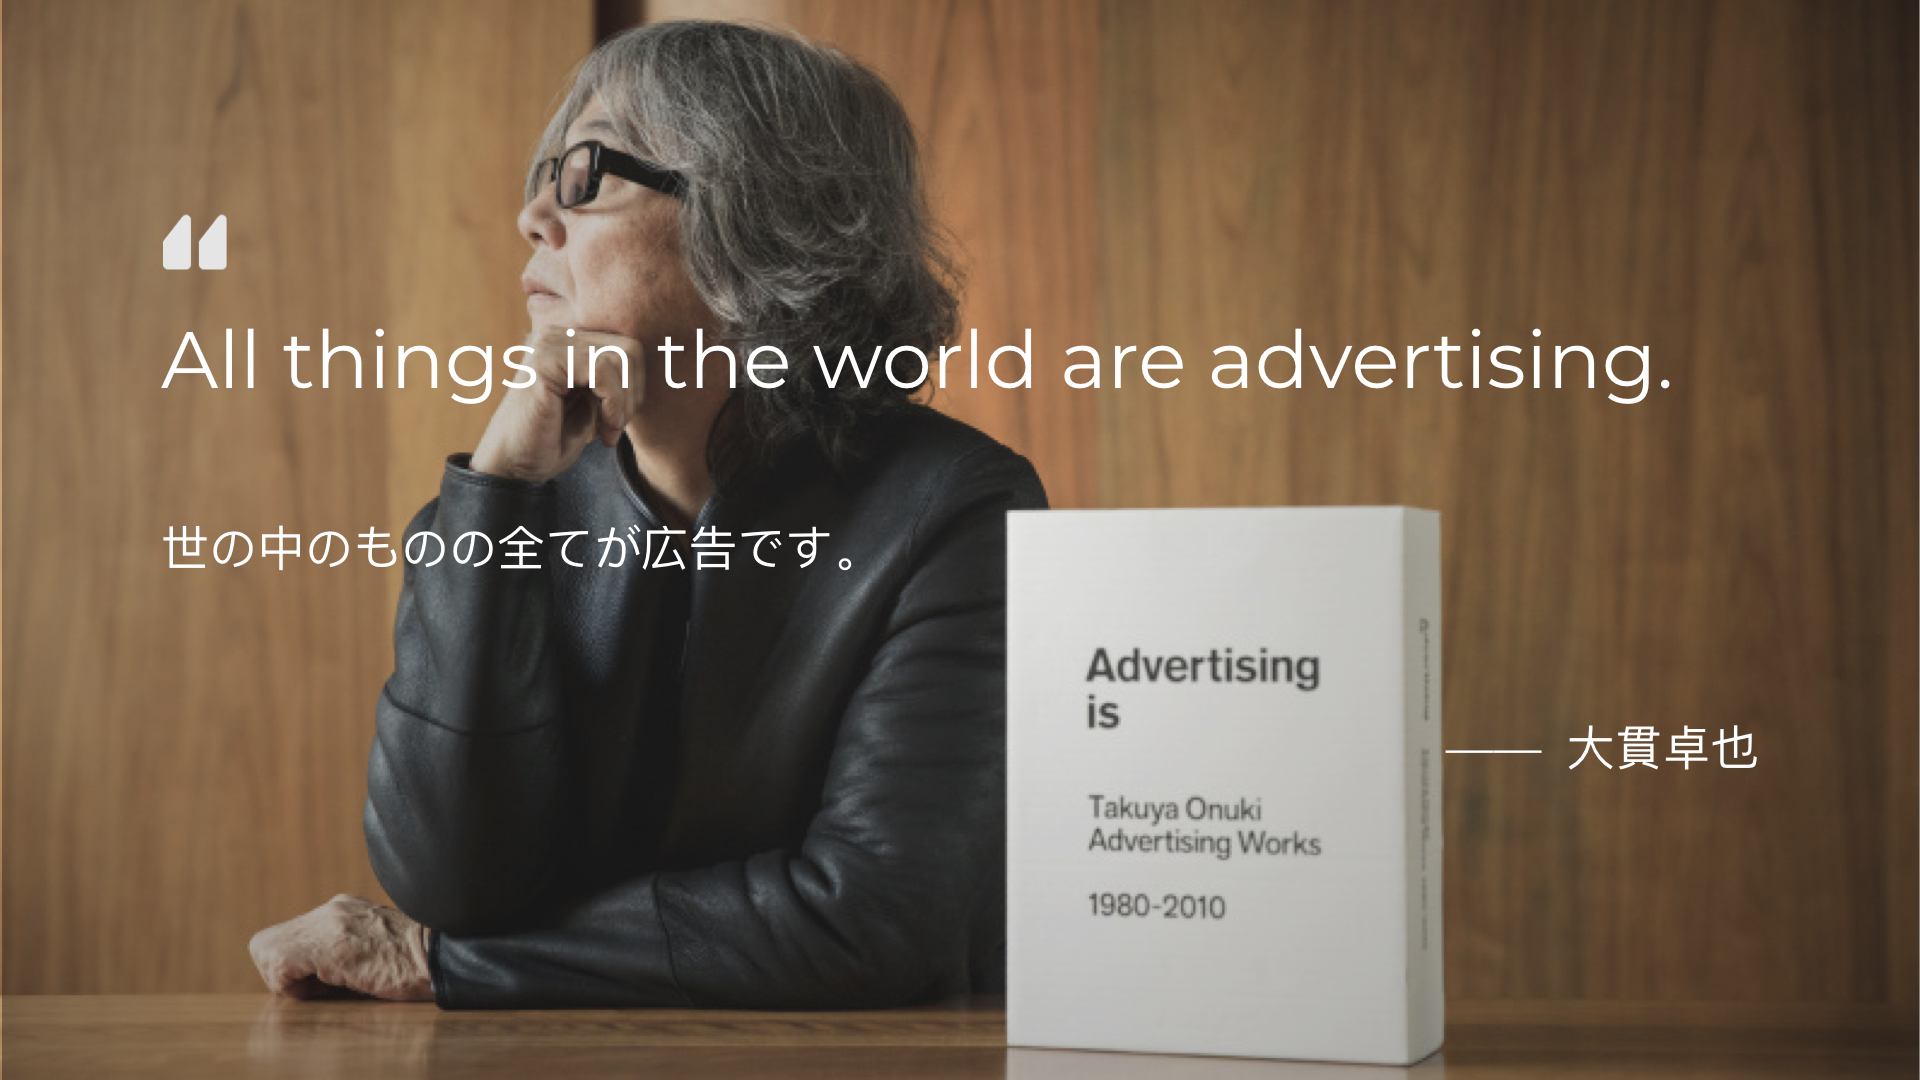 Advertising: 作为大众媒介的广告和作为视觉传达的广告